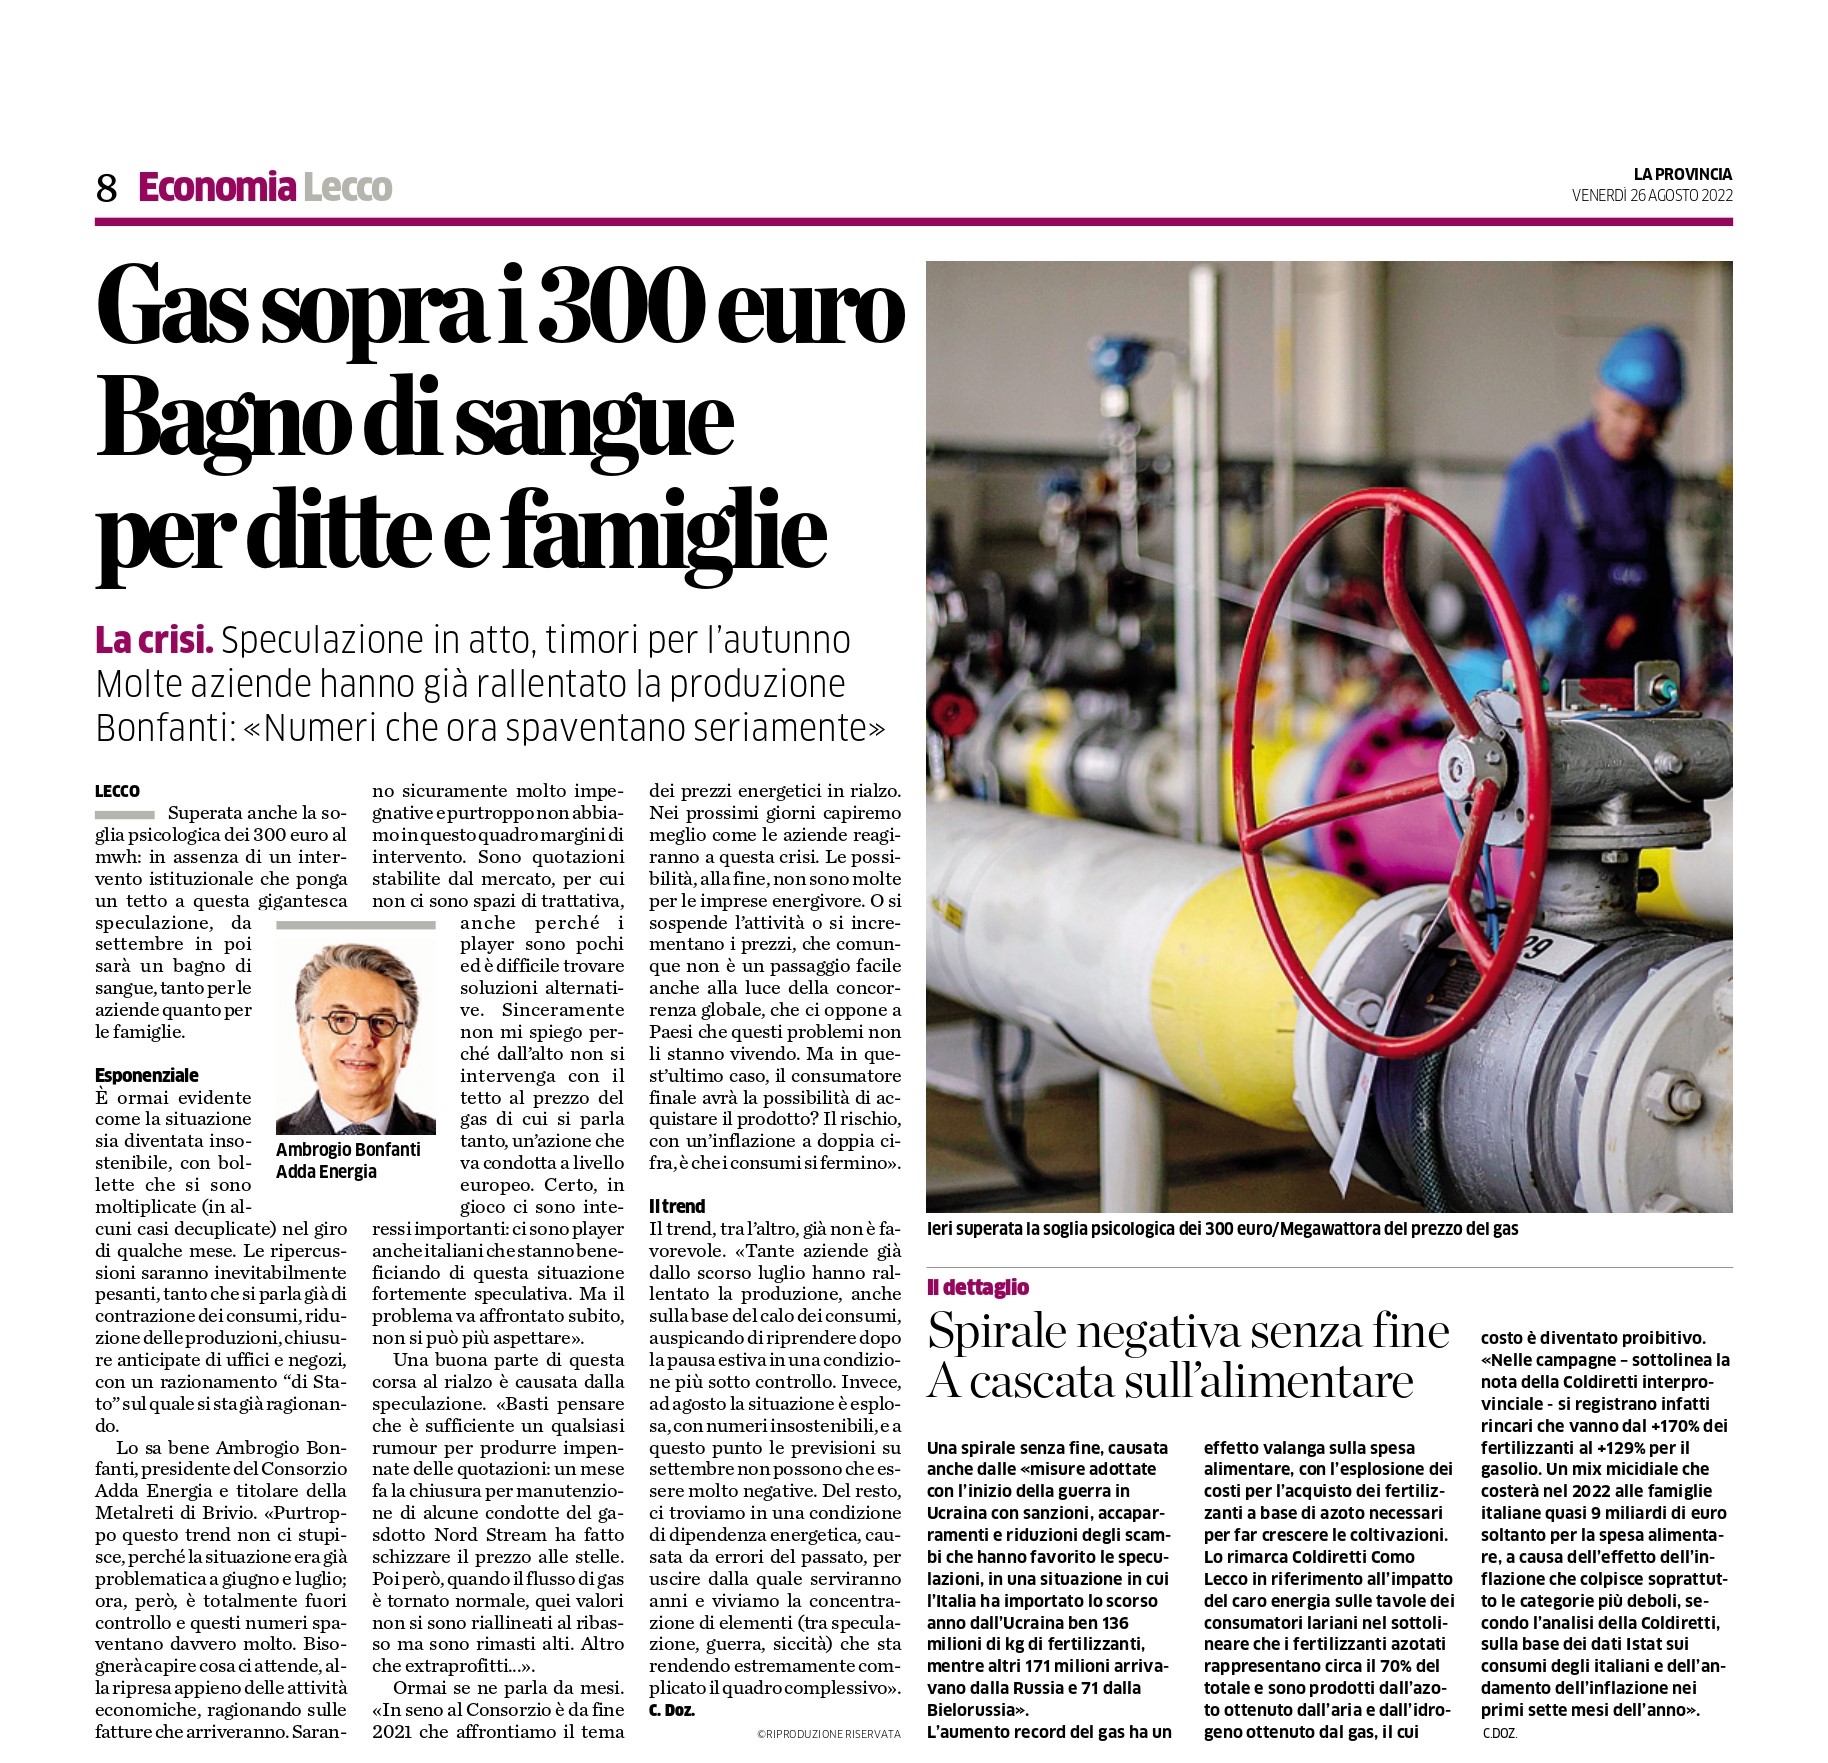 Gas sopra i 300 euro bagno di sangue per ditte e famiglie